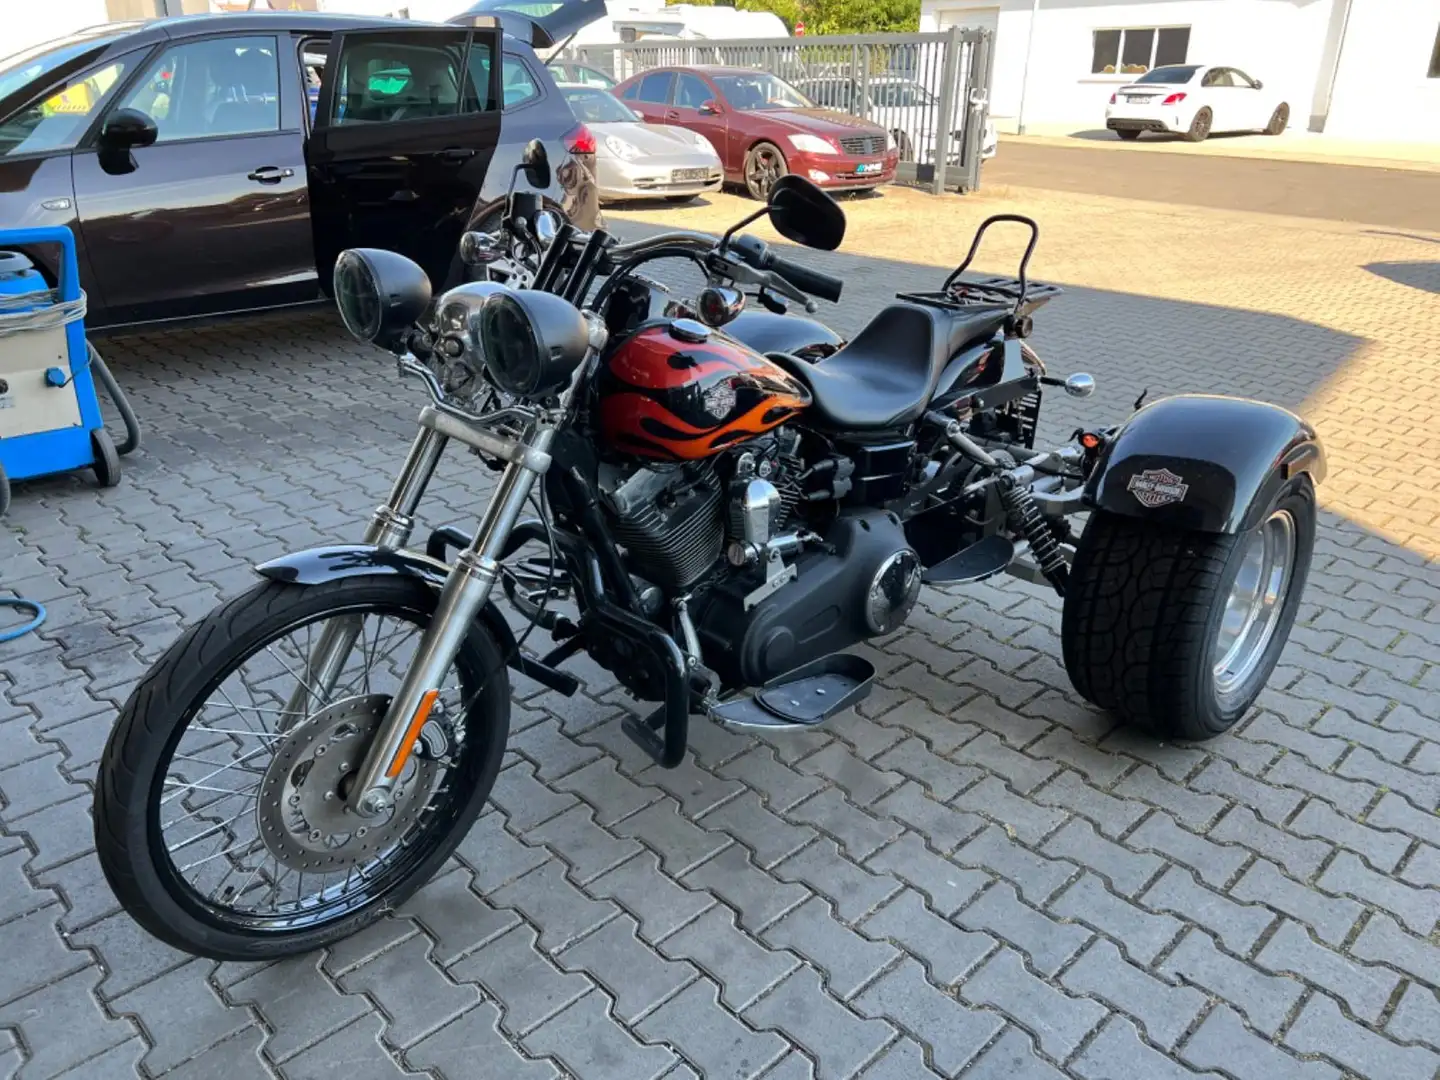 Harley-Davidson FXD Sonstige in Schwarz gebraucht in Büdingen-Düdelsheim  für € 32.900,-